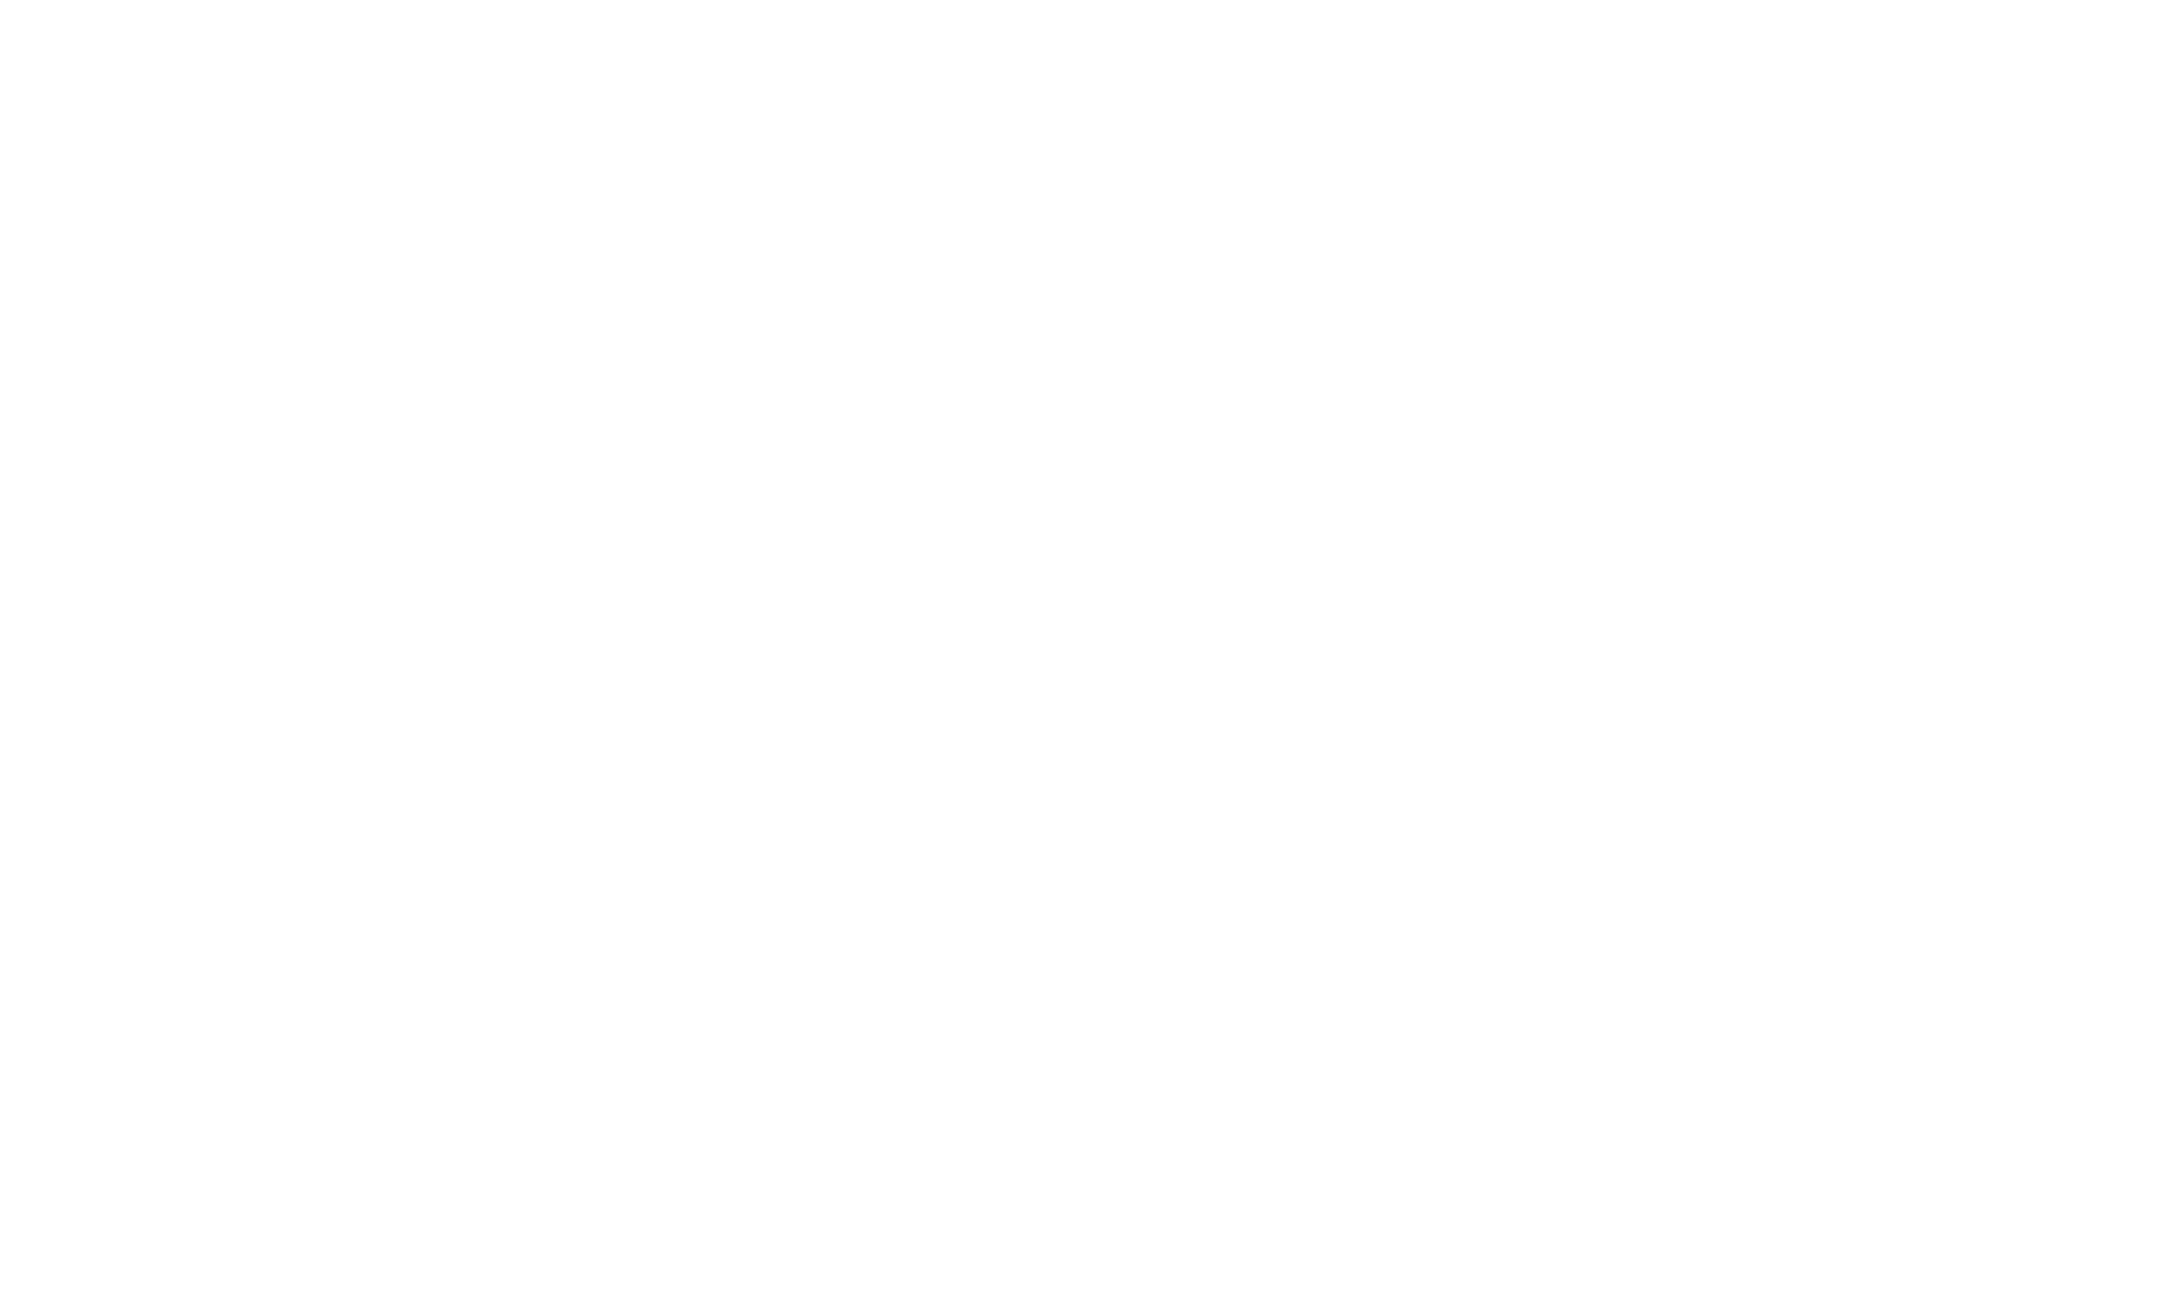 Blessed Boys logo